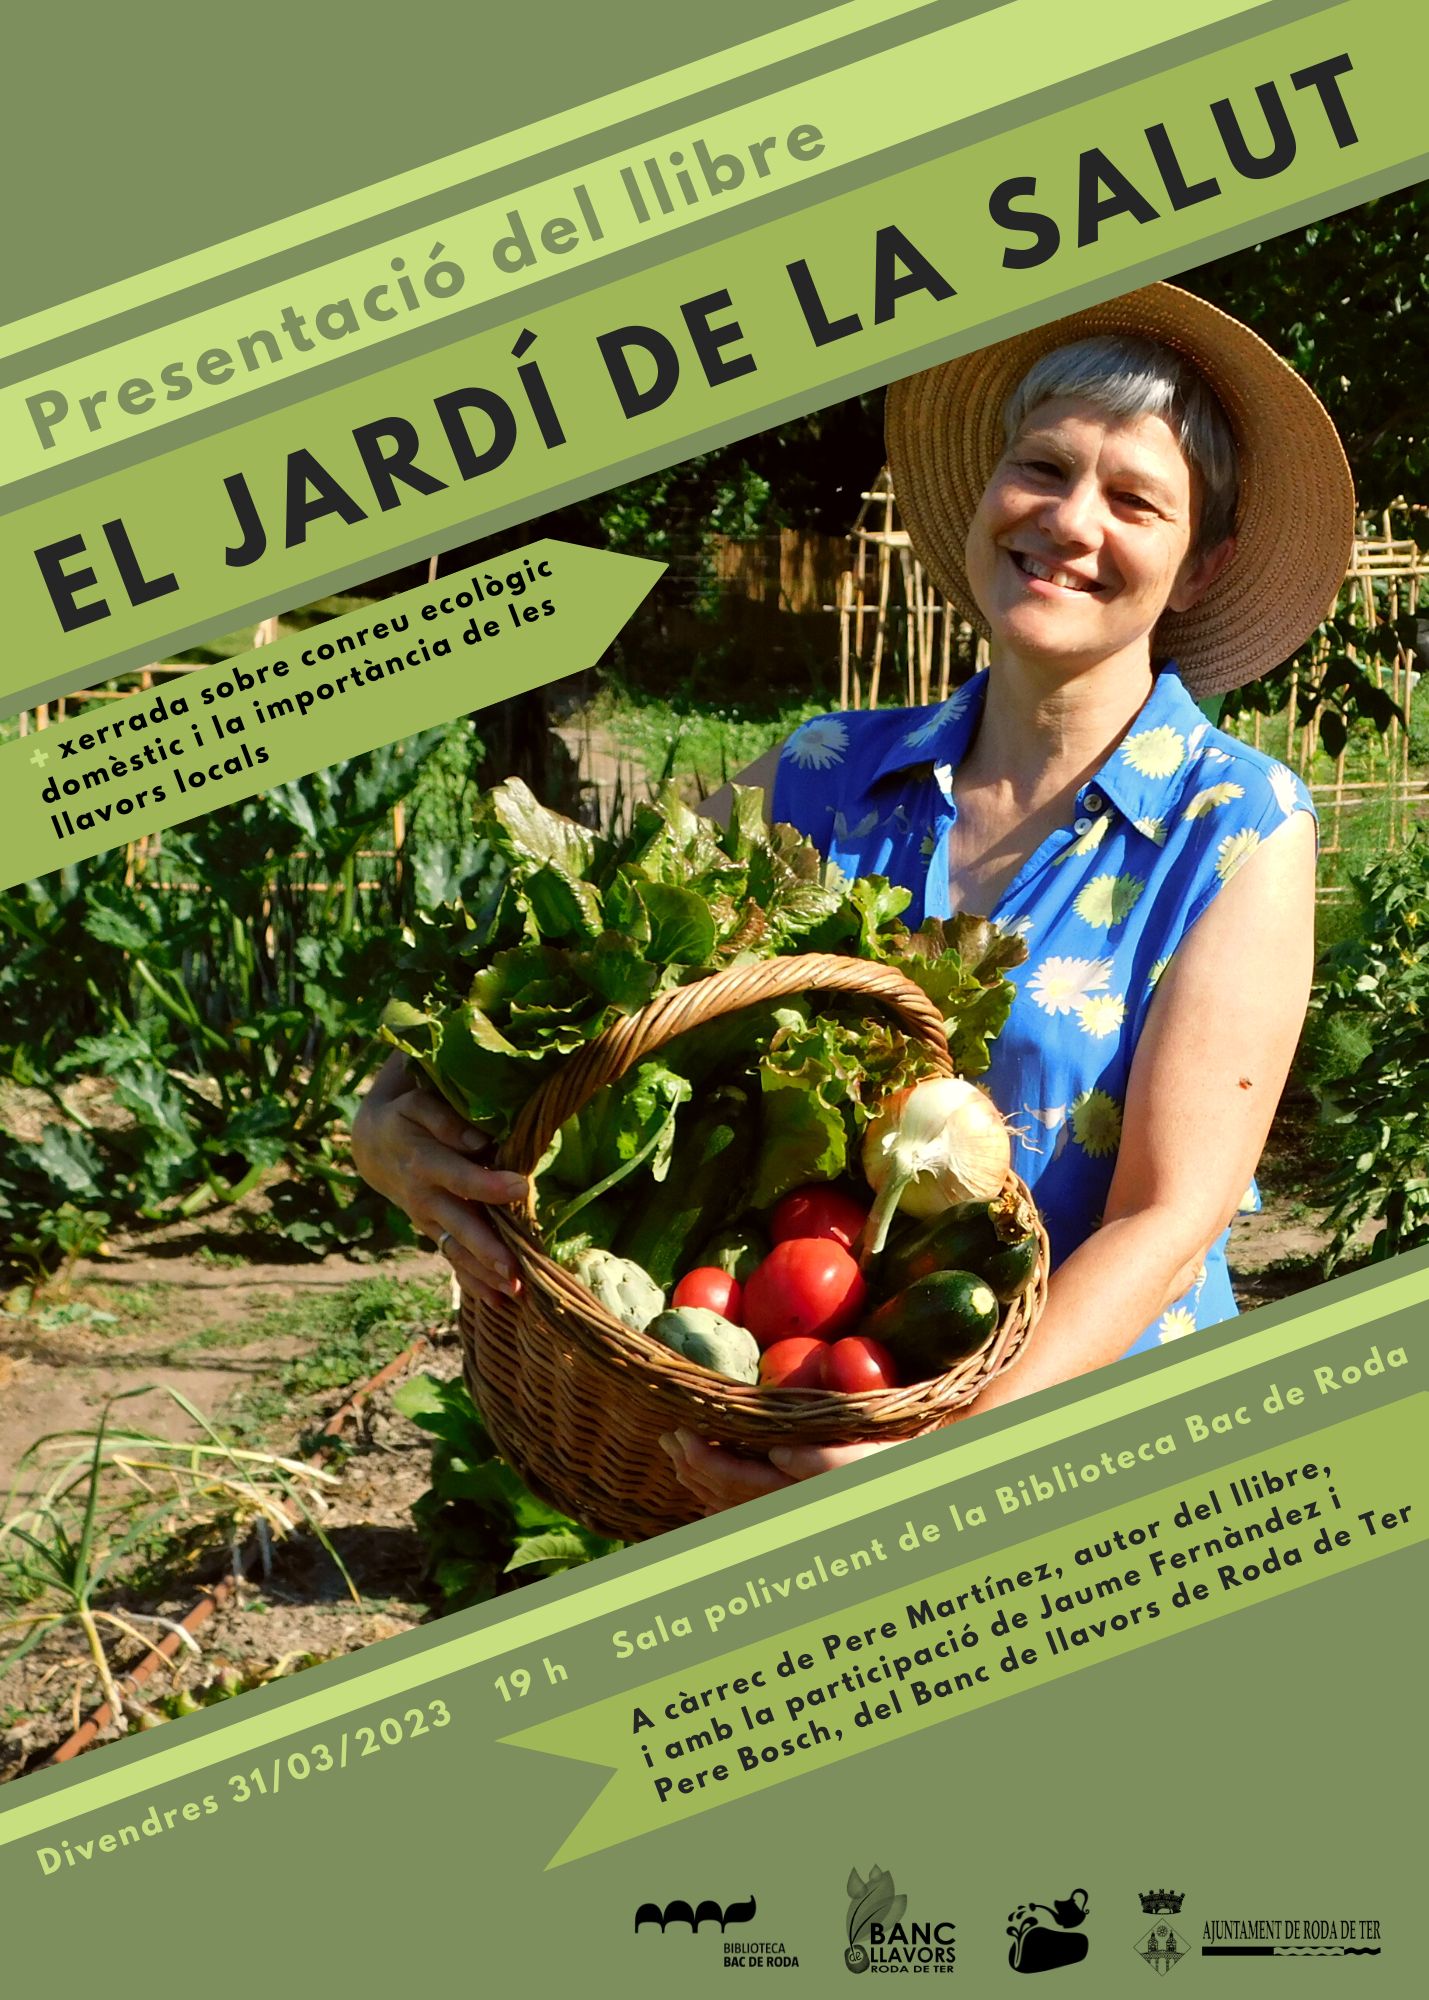 . Presentació del llibre "El jardí de la salut" i xerrada sobre conreu ecològic domèstic